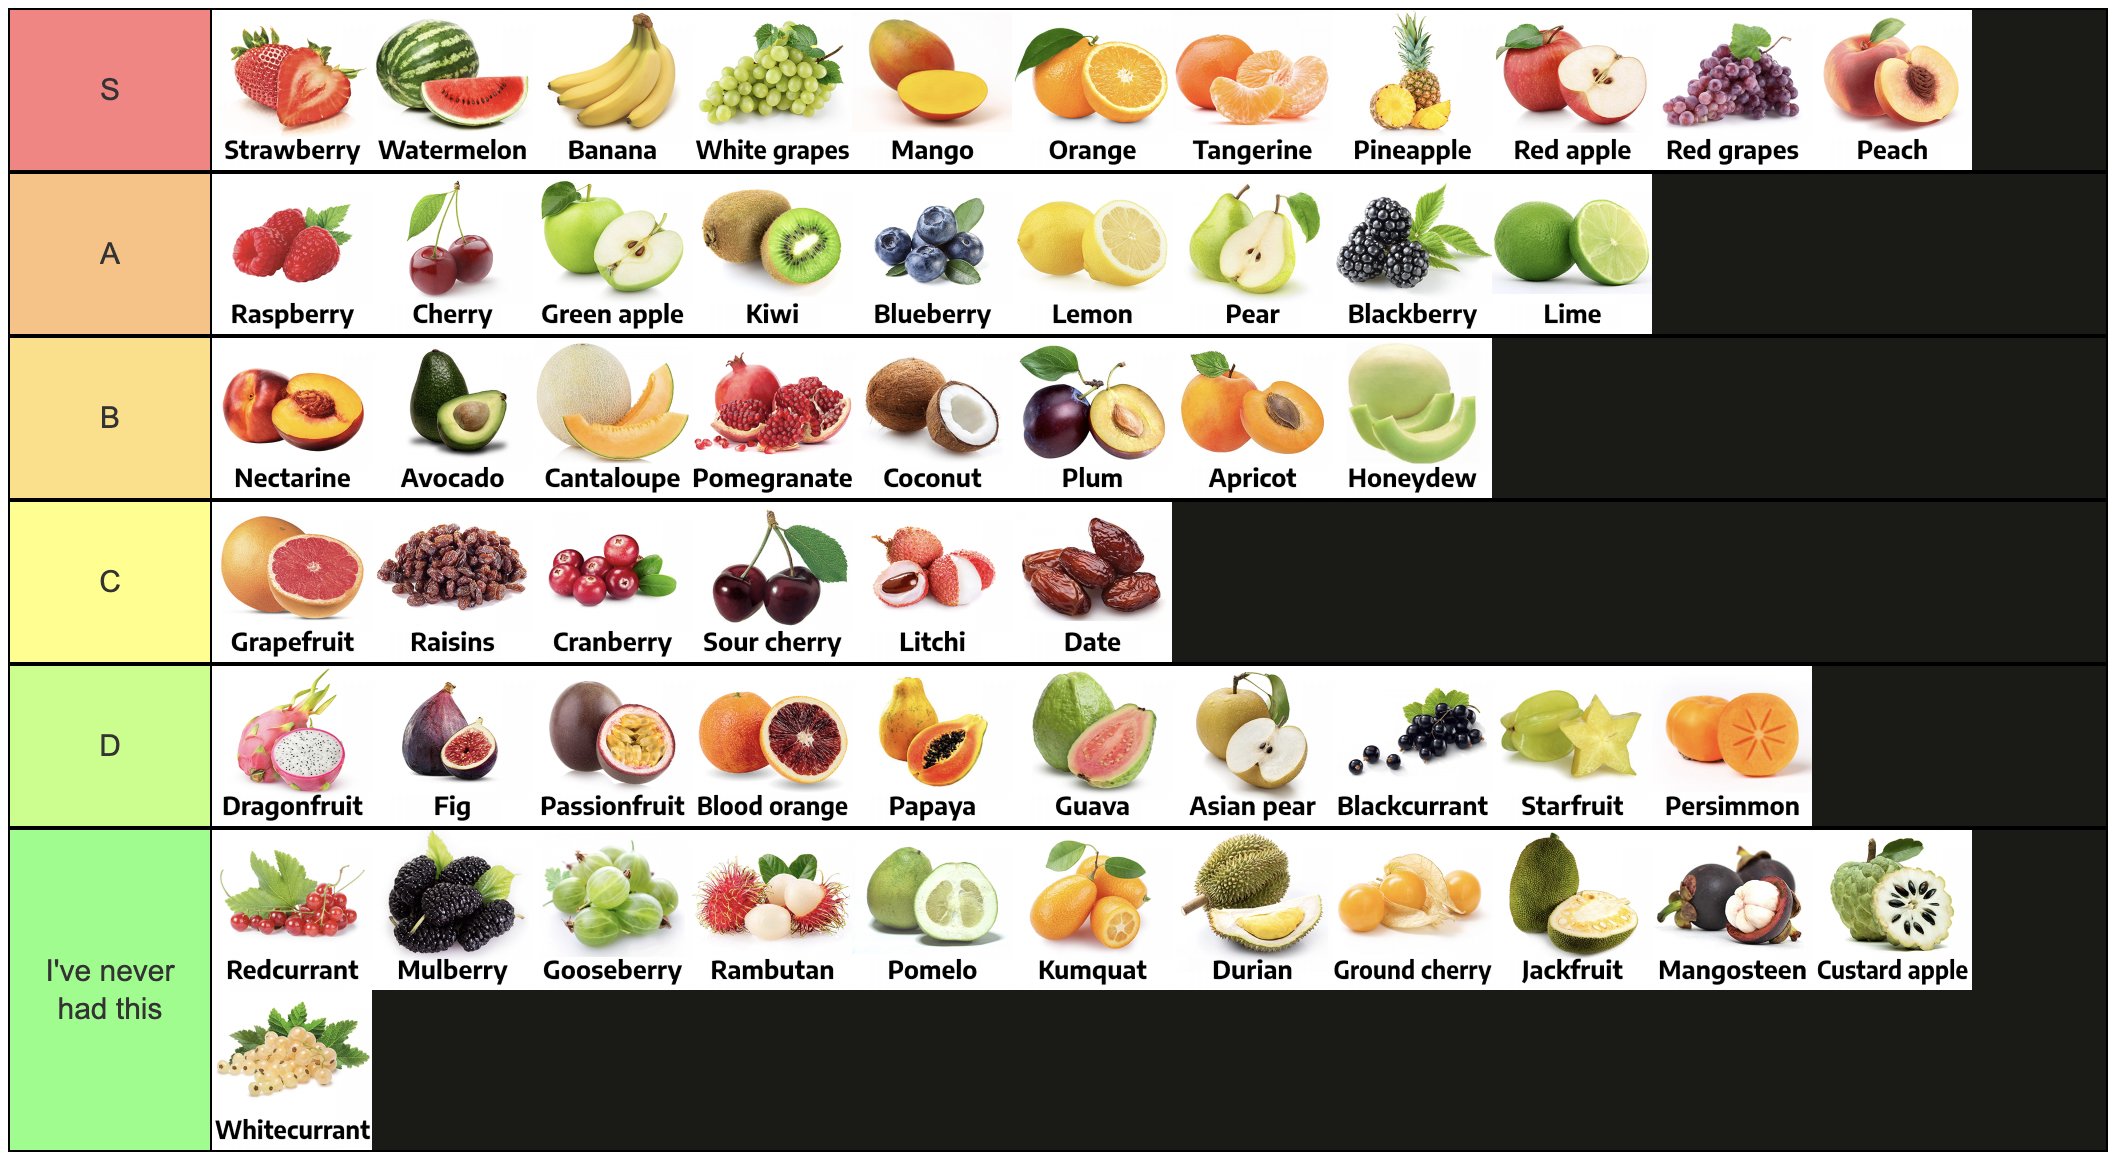 Fruit Battlegrounds Tier List (2023) – Best Fruits Ranked